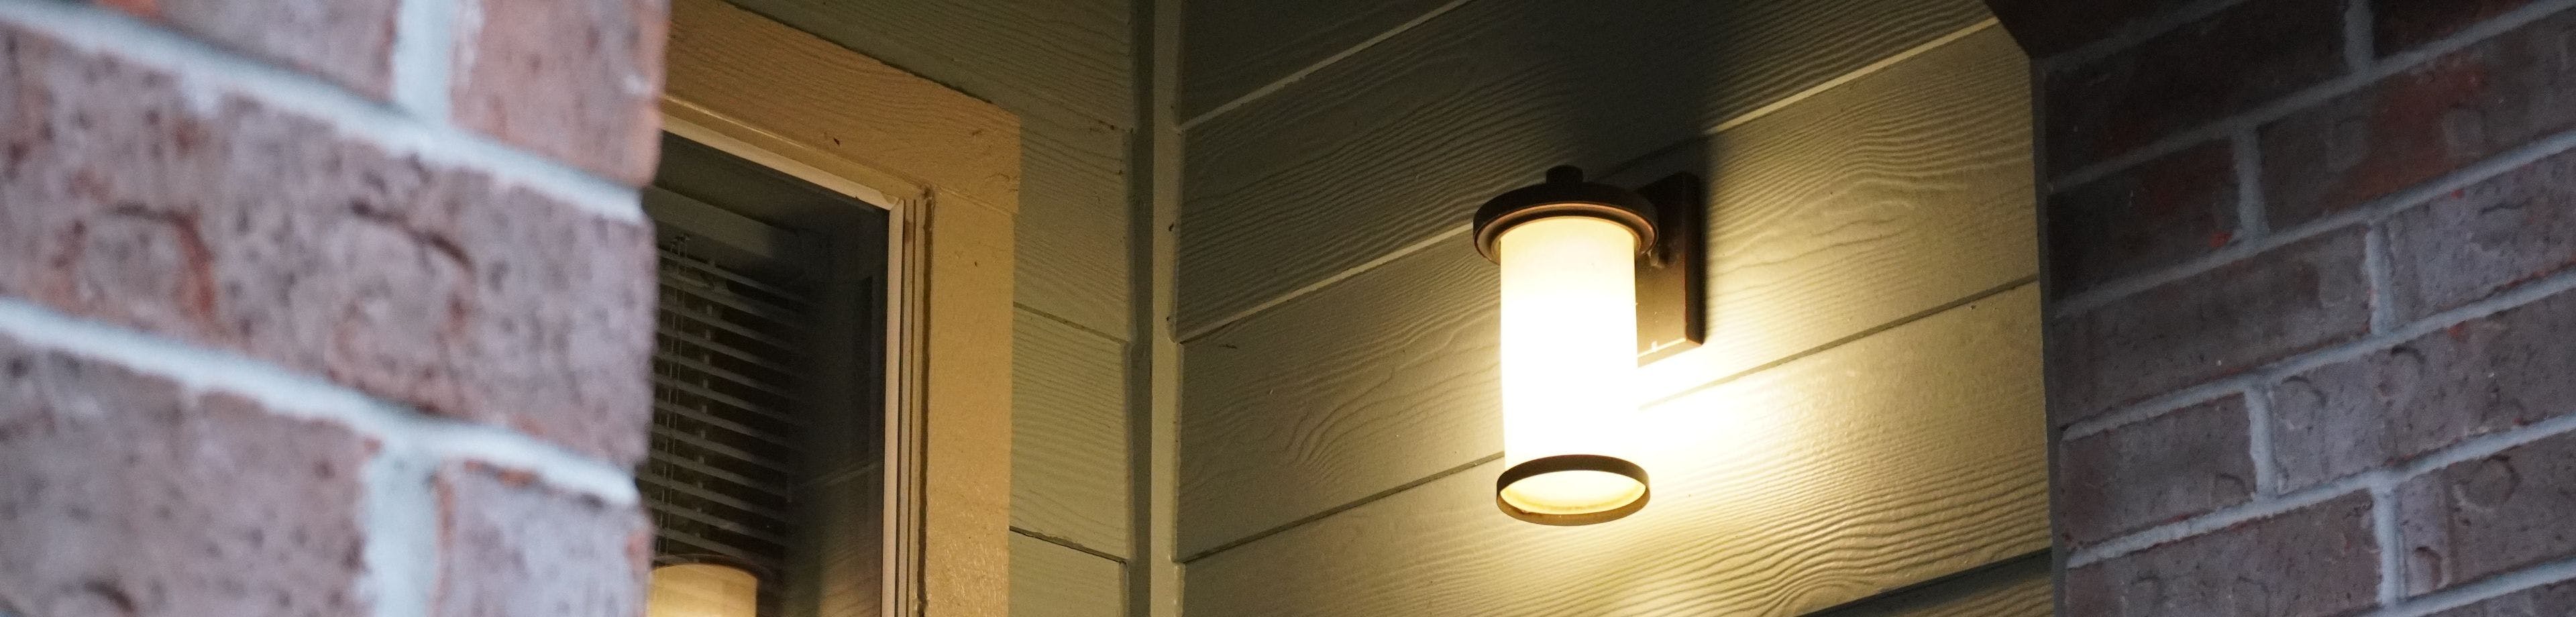 Een buitenlamp aan de gevel van een woonhuis.